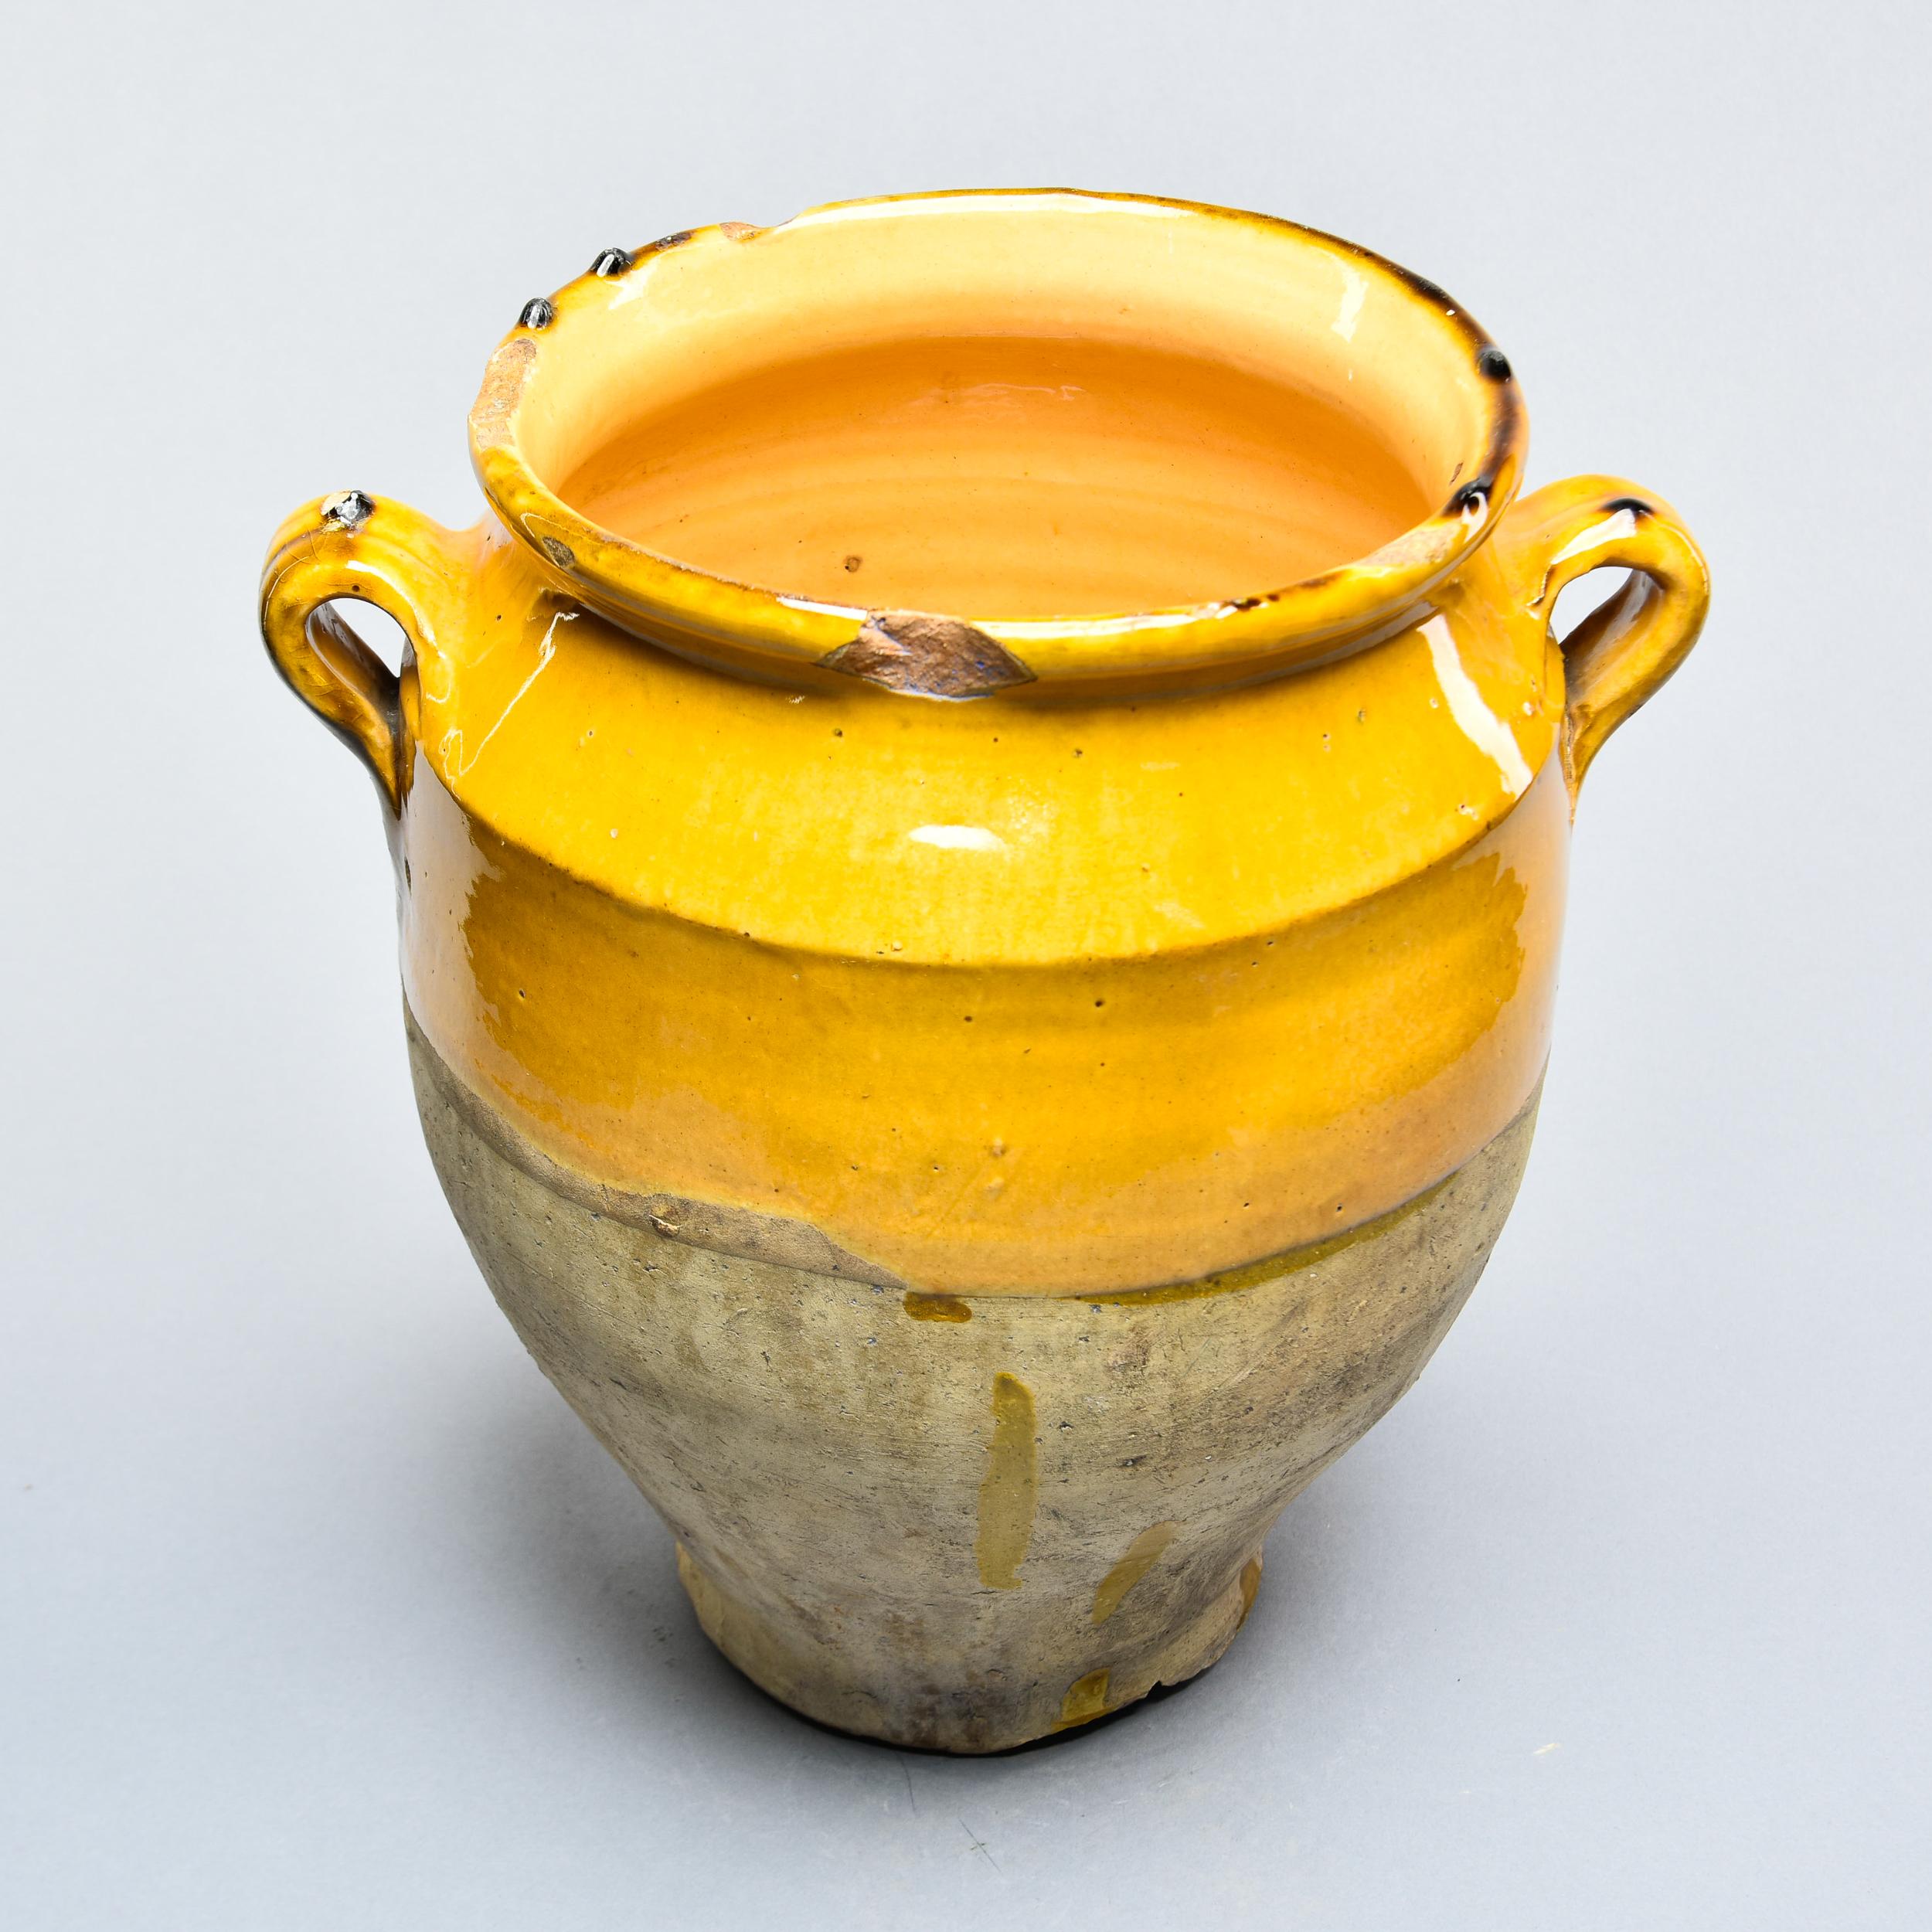 Ceramic French Mustard Glazed Confit Jar with Dark Streaks